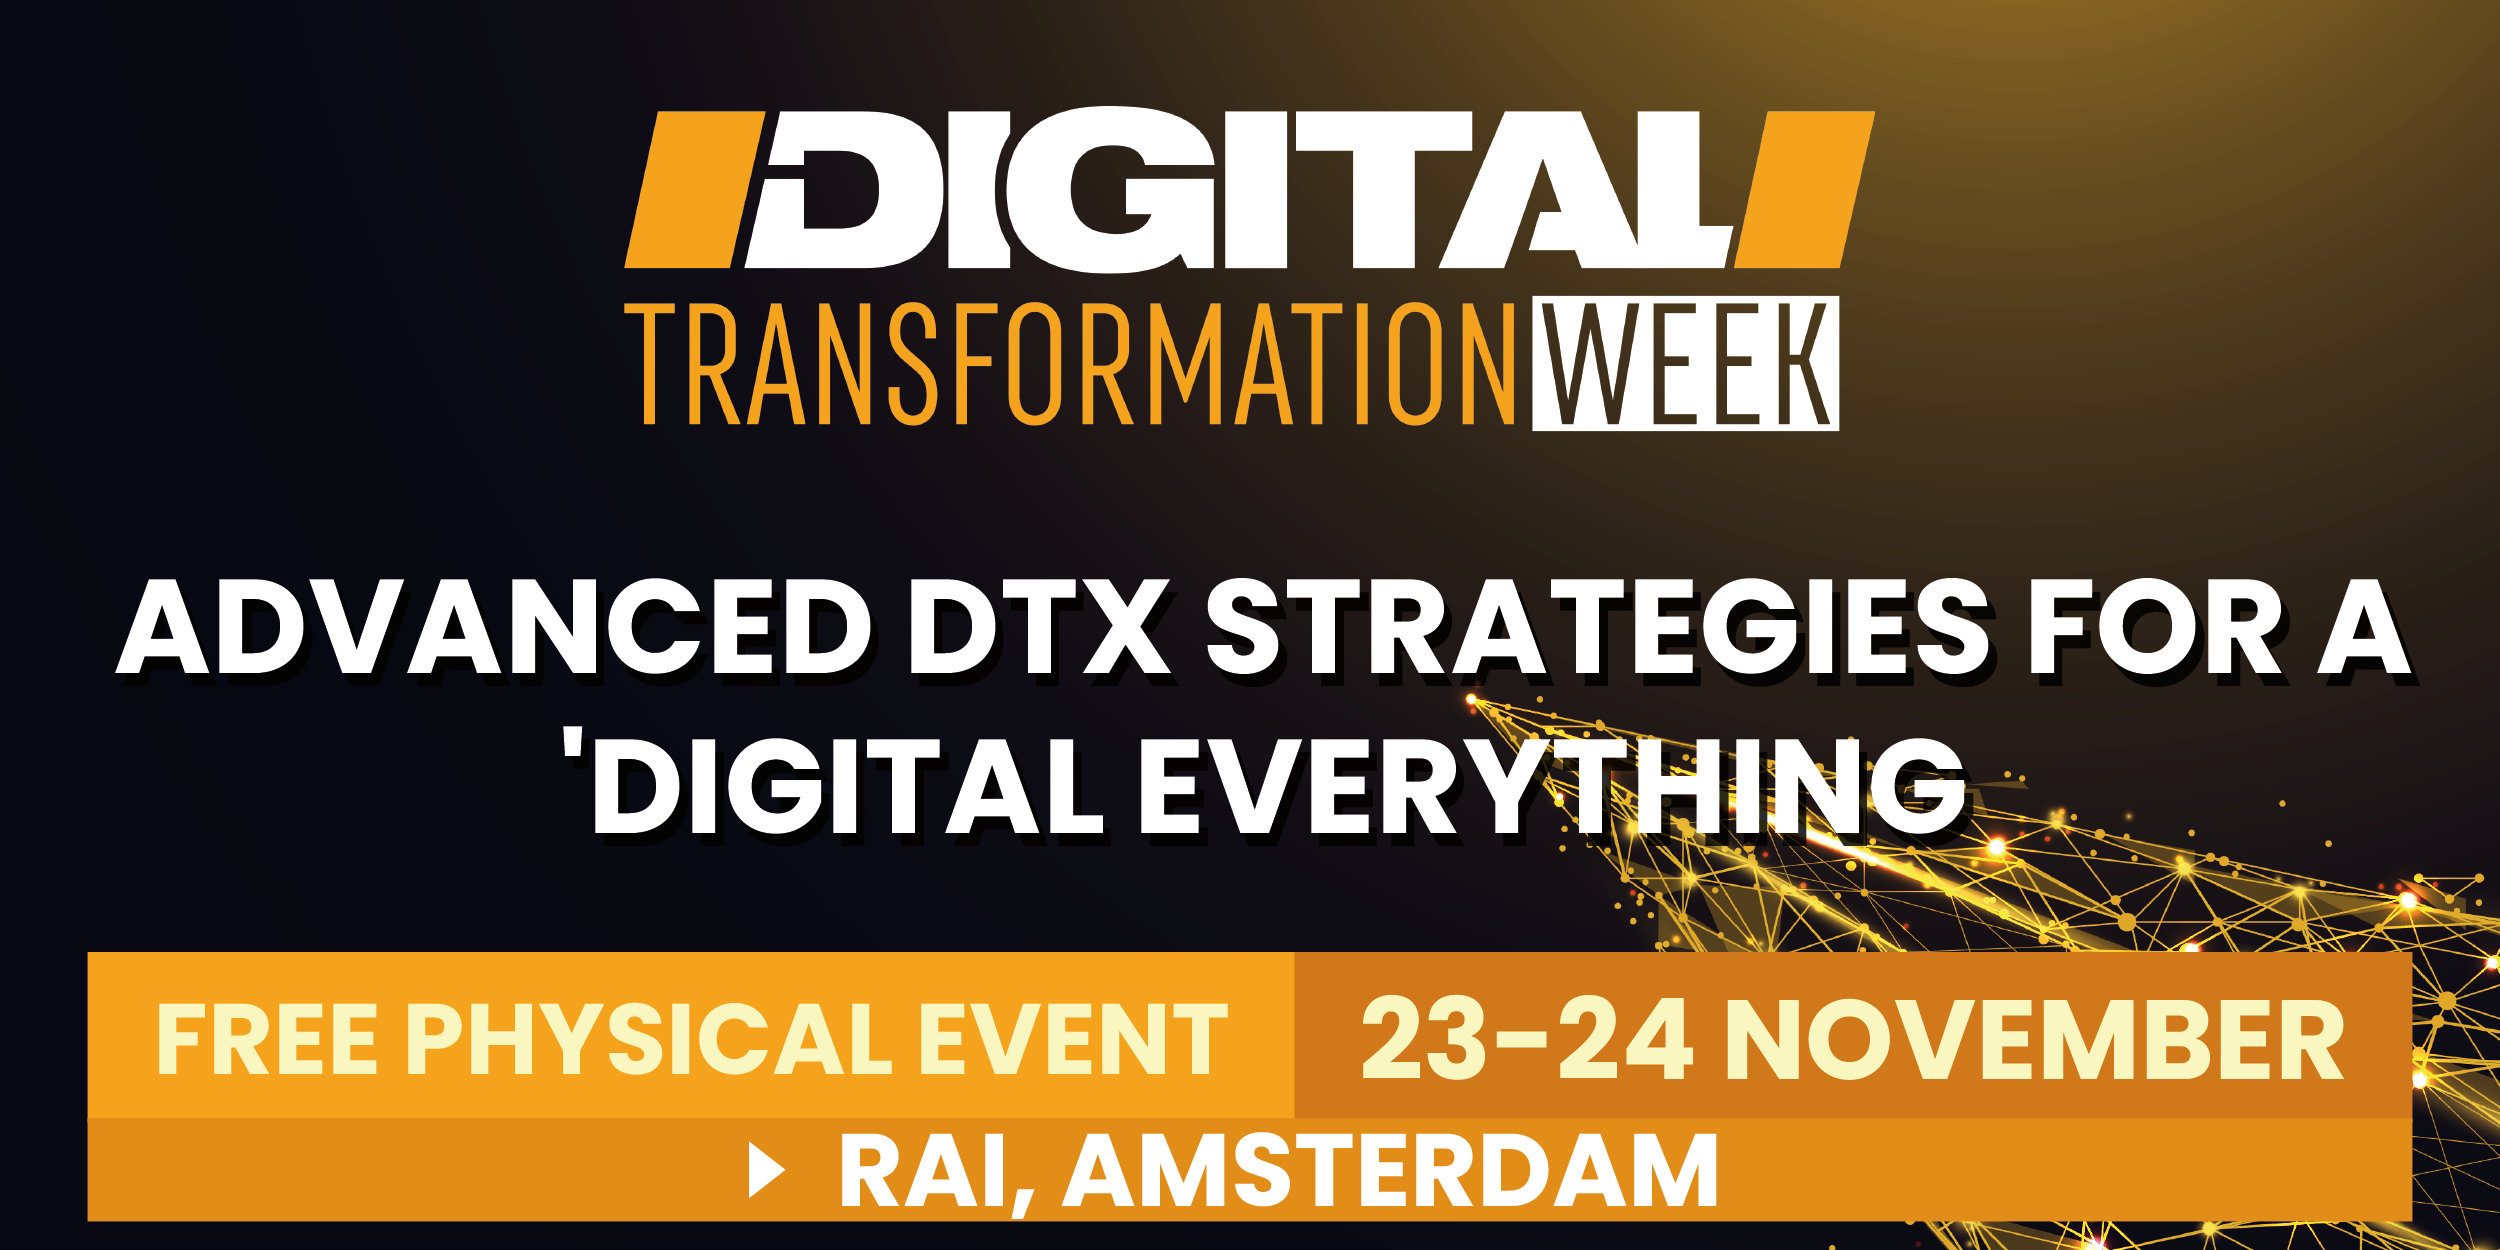 Digital Transformation Week Europe organized by Techforge